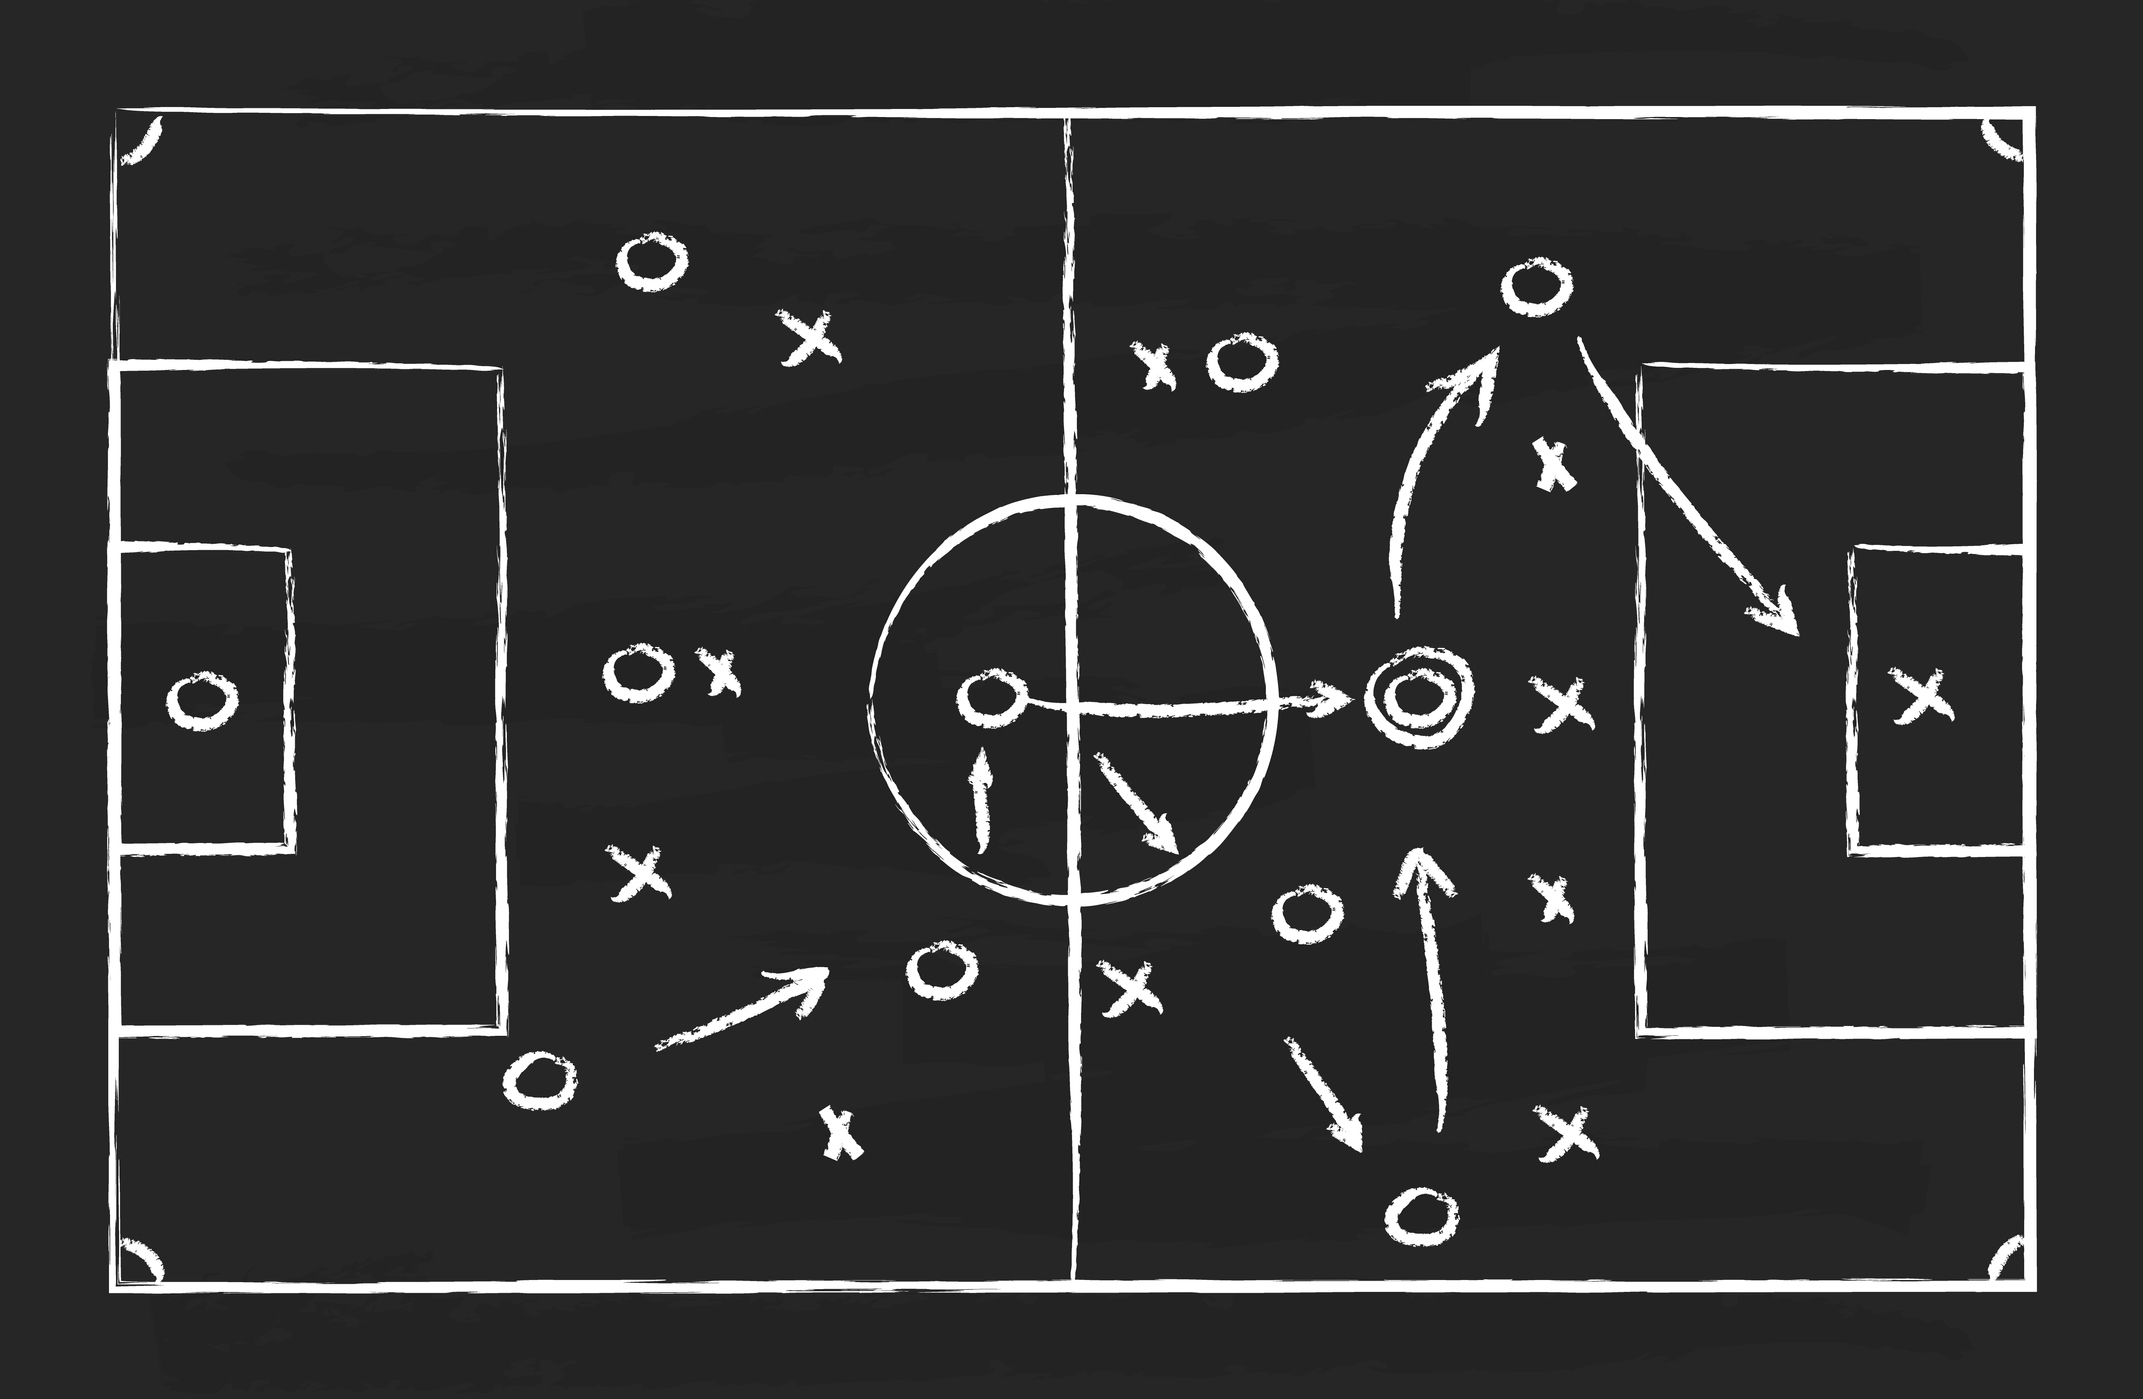 Blackboard showing soccer strategy